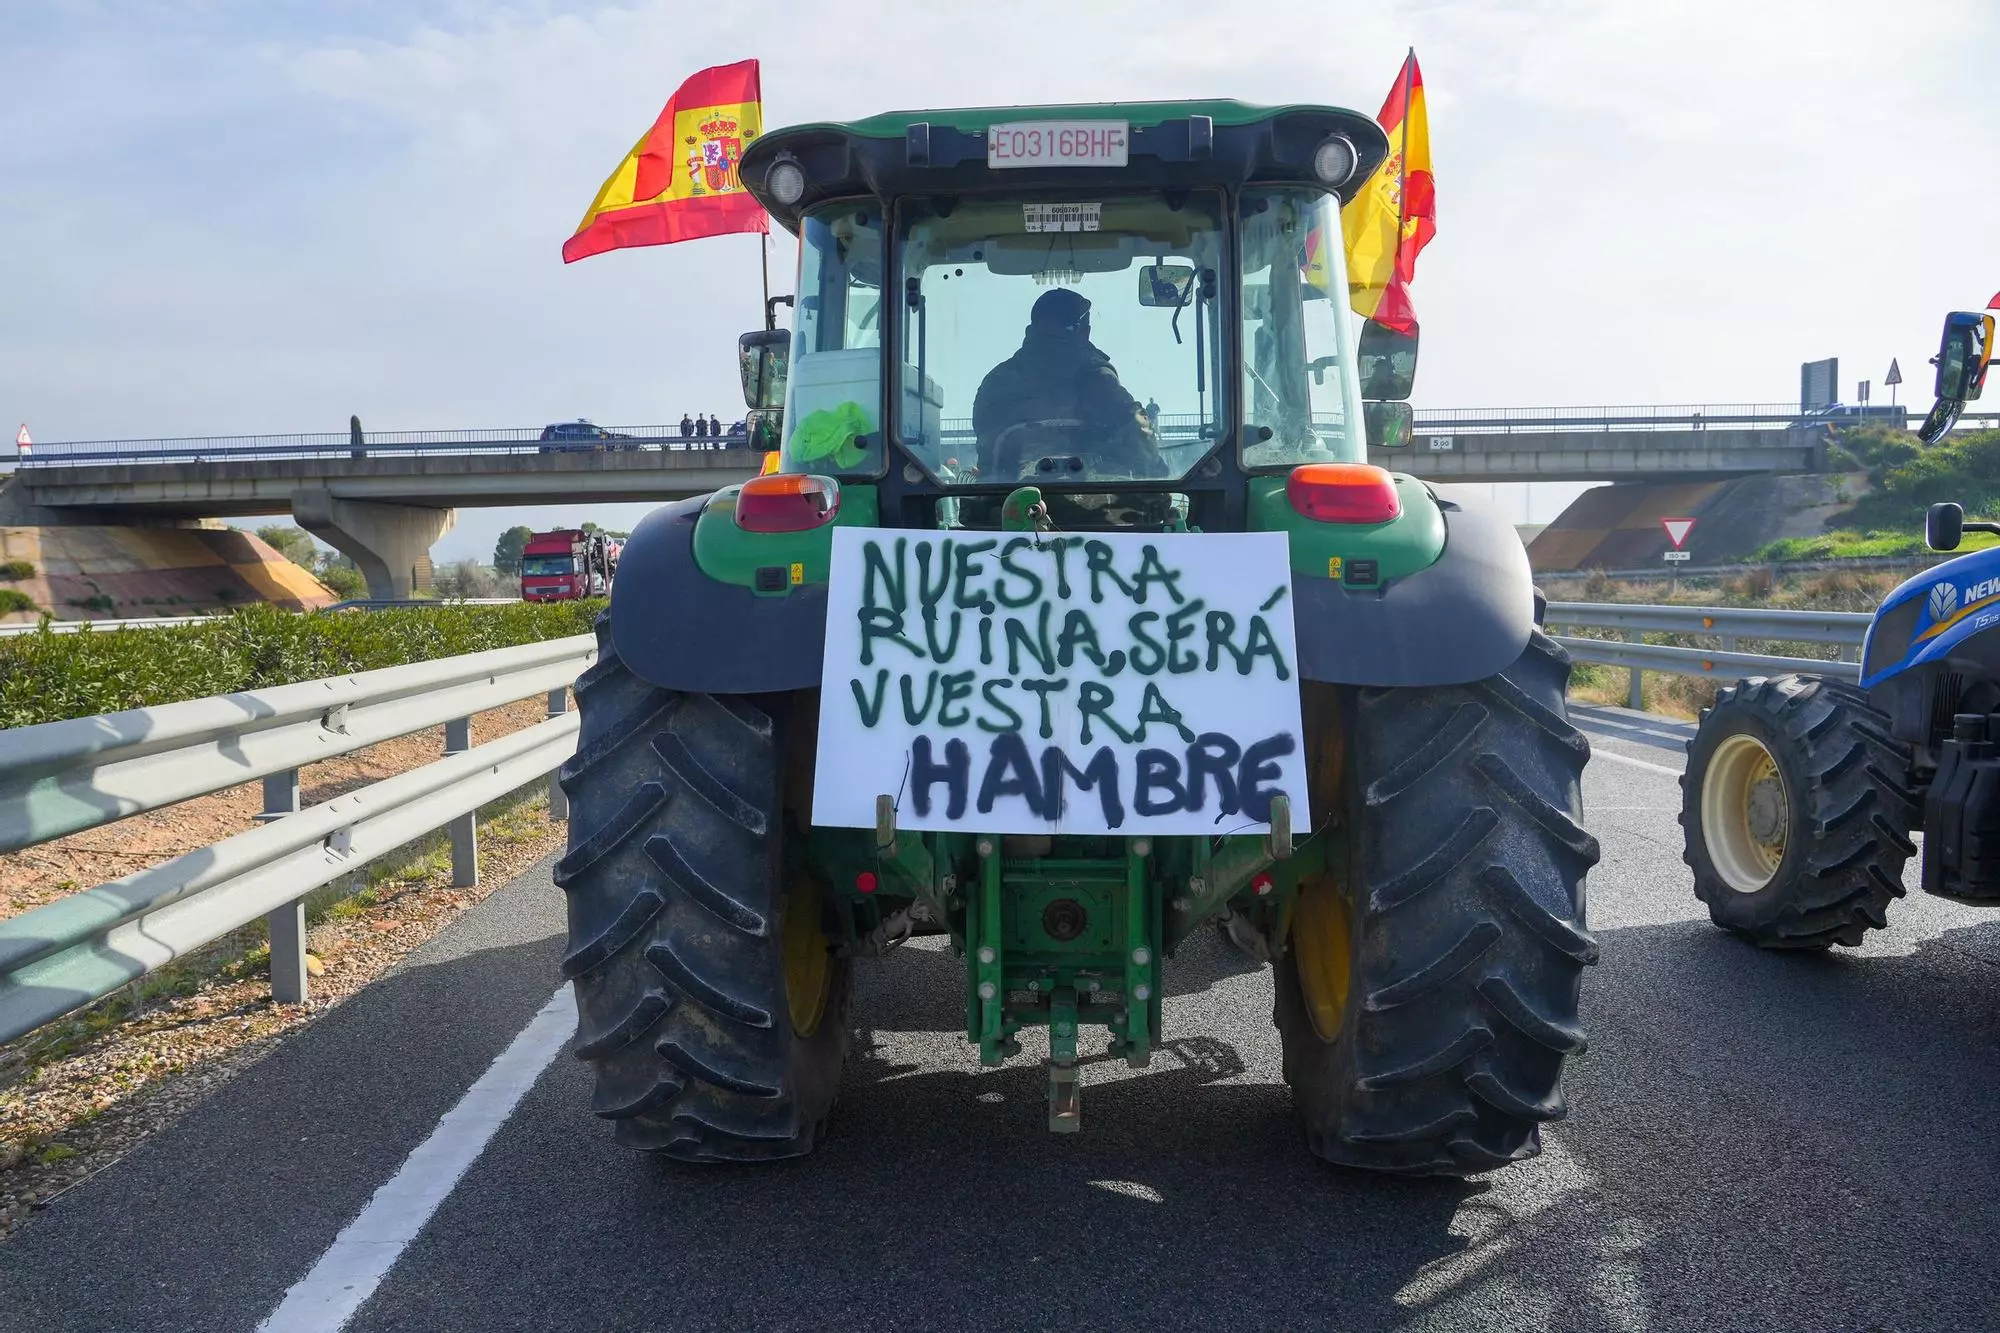 Continúan las protestas de los agricultores y ganaderos